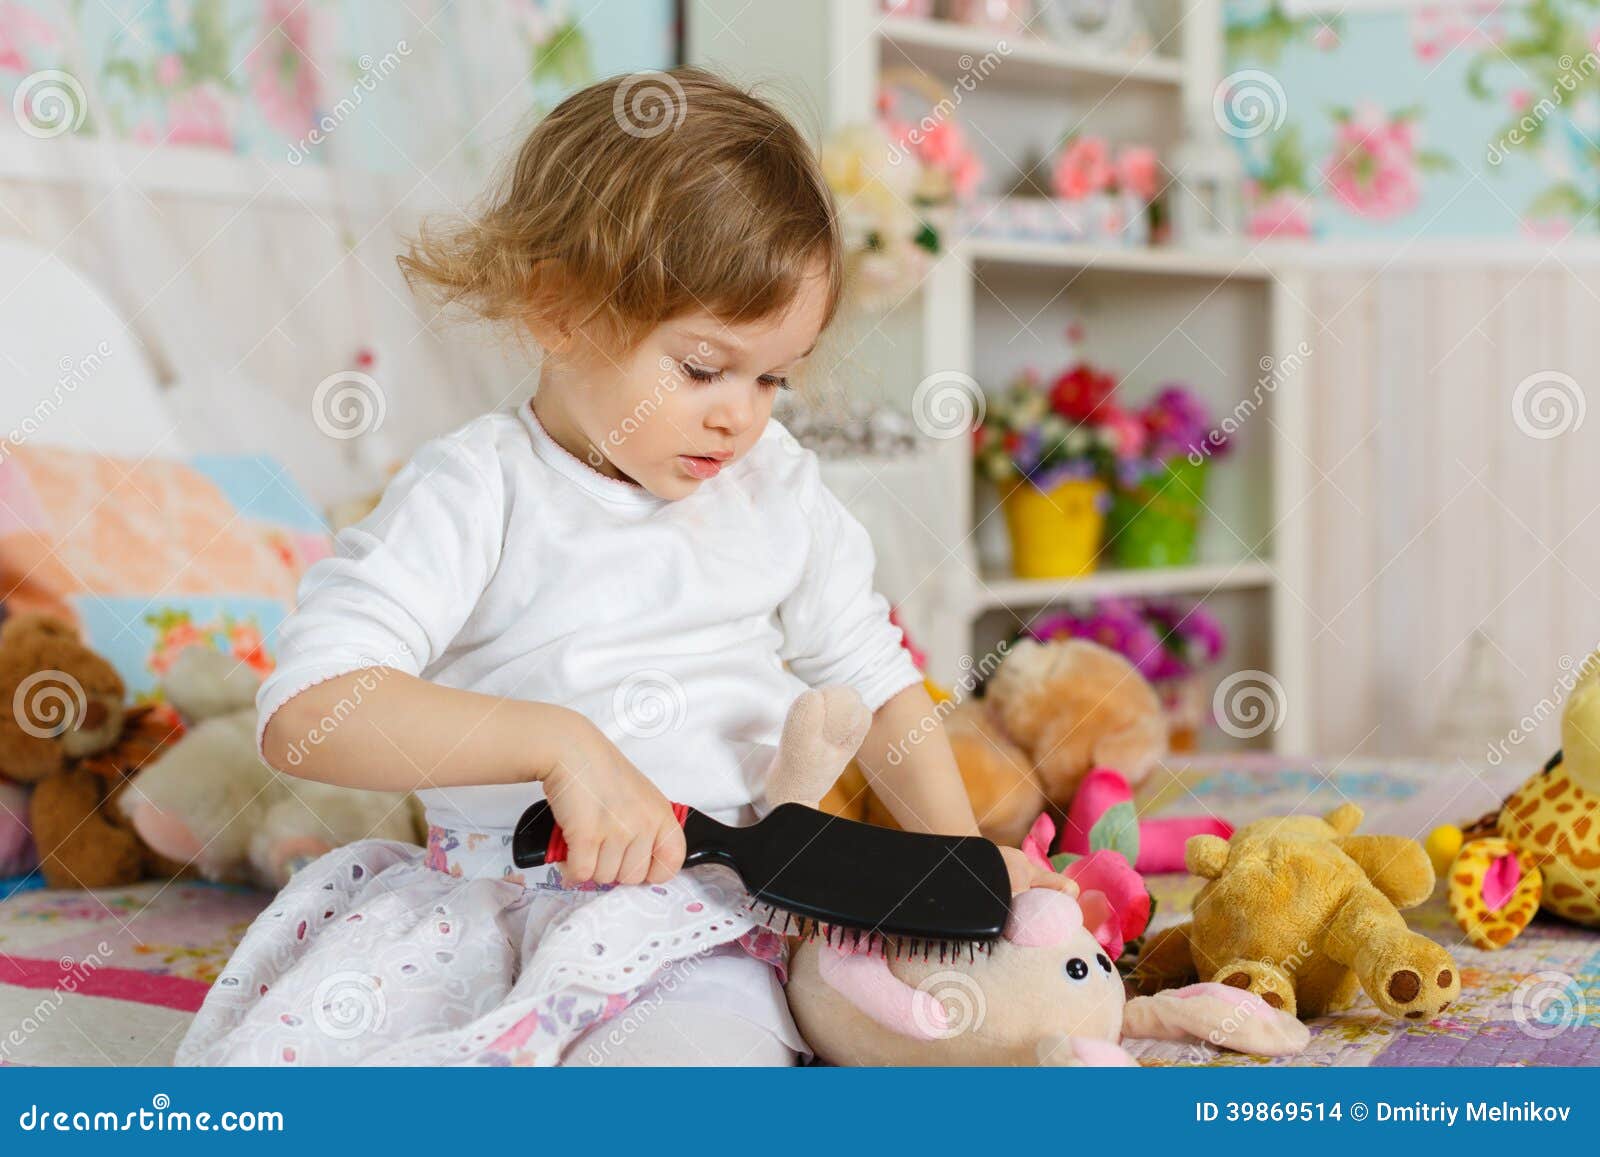 Детки играют с кисками. Игрушки для девочек. Маленькая девочка играет с игрушками. Девочка расчесывает игрушку. Маленькая девочка с игрушкой.